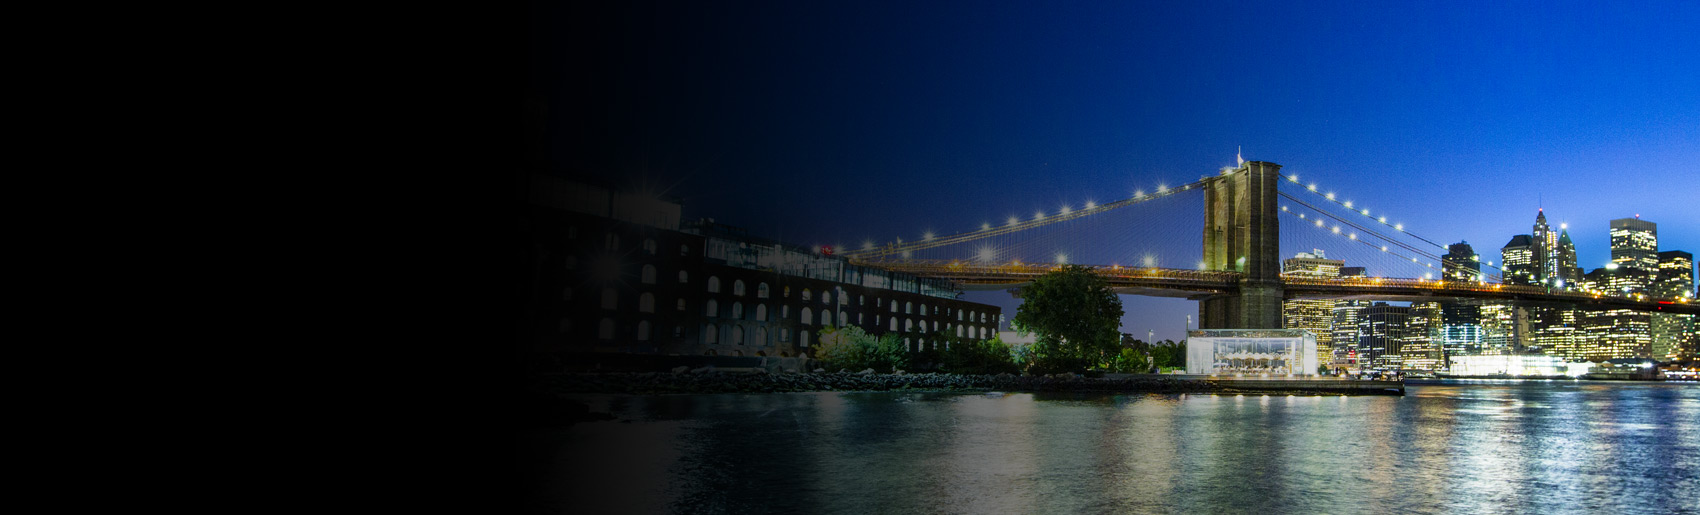 Una vista nocturna del puente de Brooklyn y el East River.